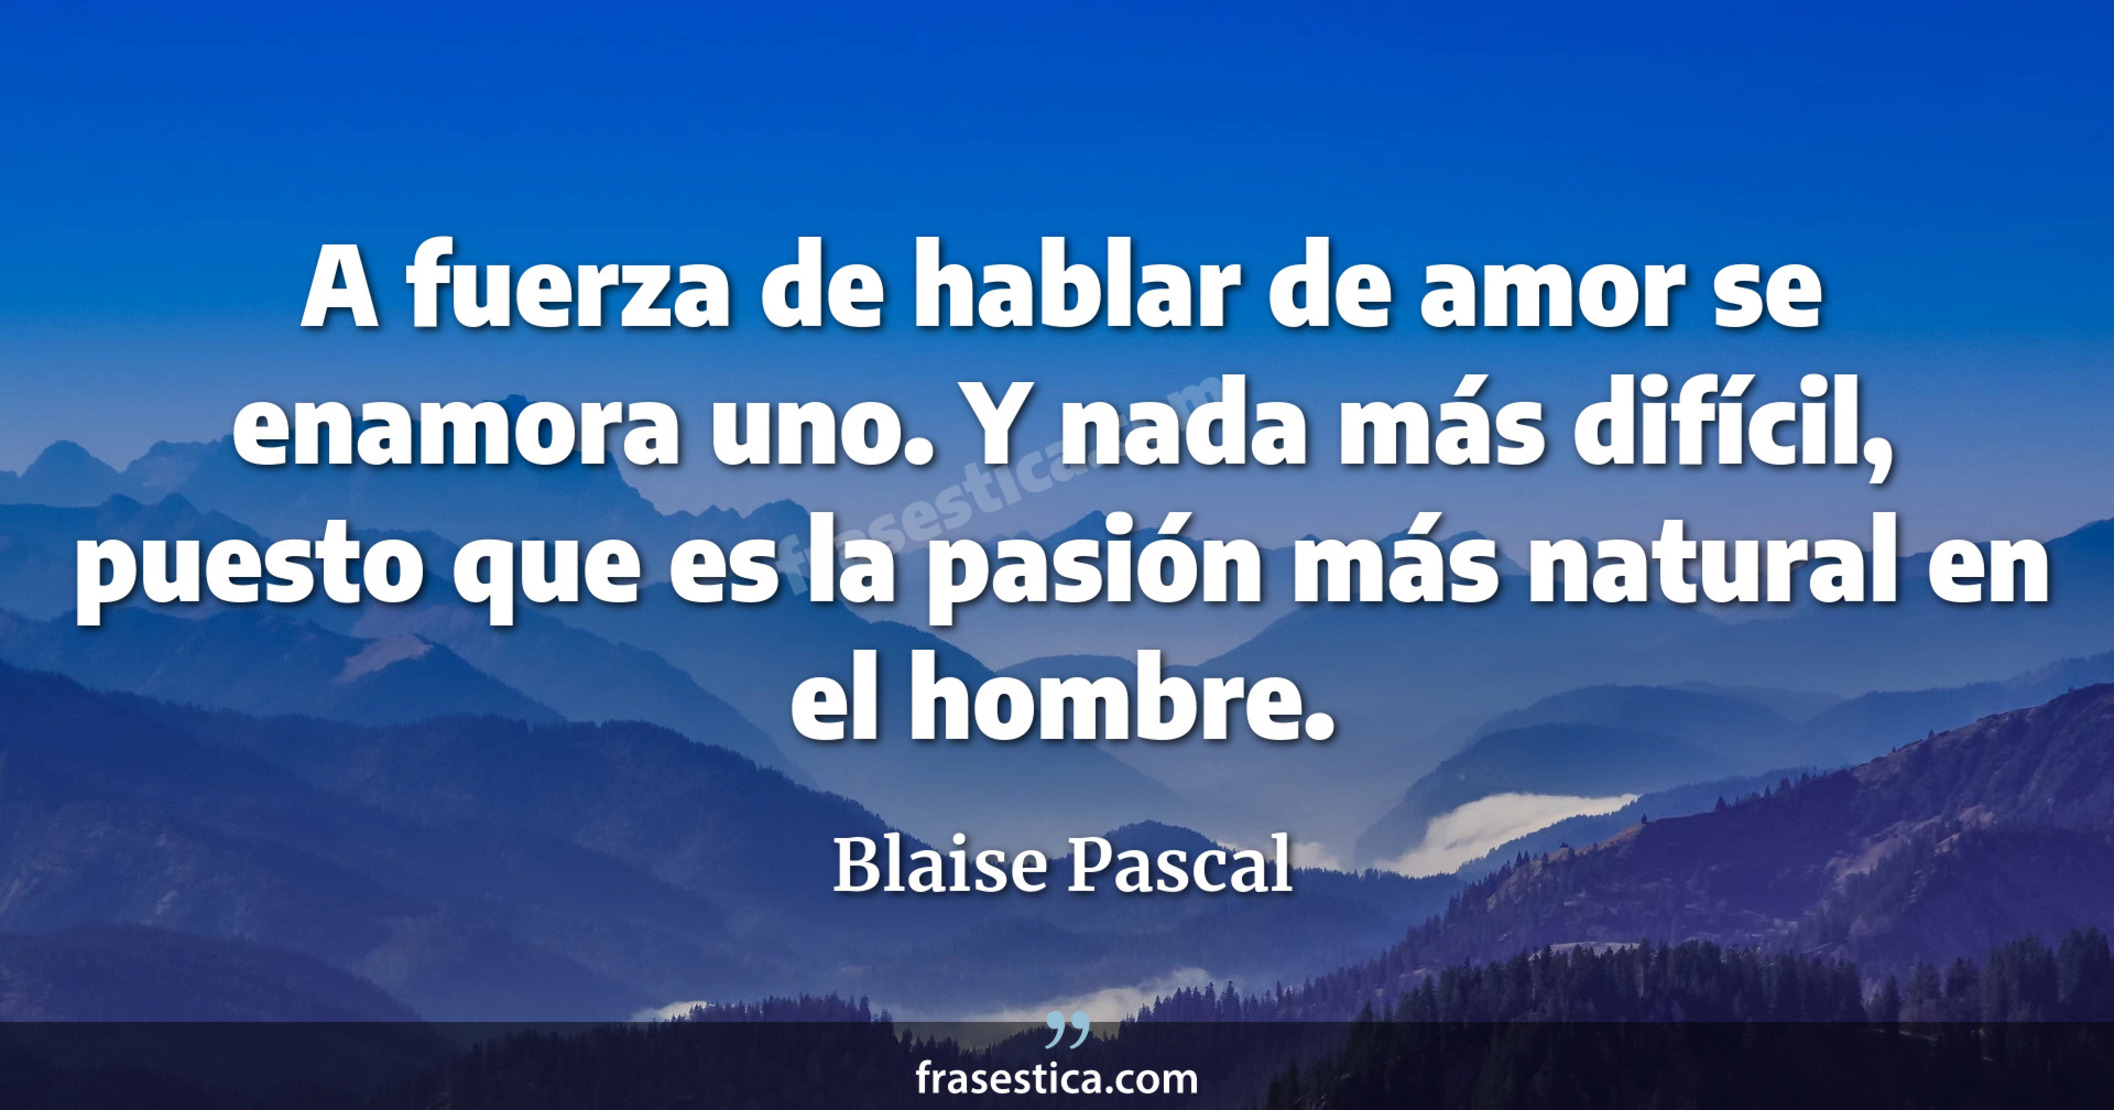 A fuerza de hablar de amor se enamora uno. Y nada más difícil, puesto que es la pasión más natural en el hombre. - Blaise Pascal